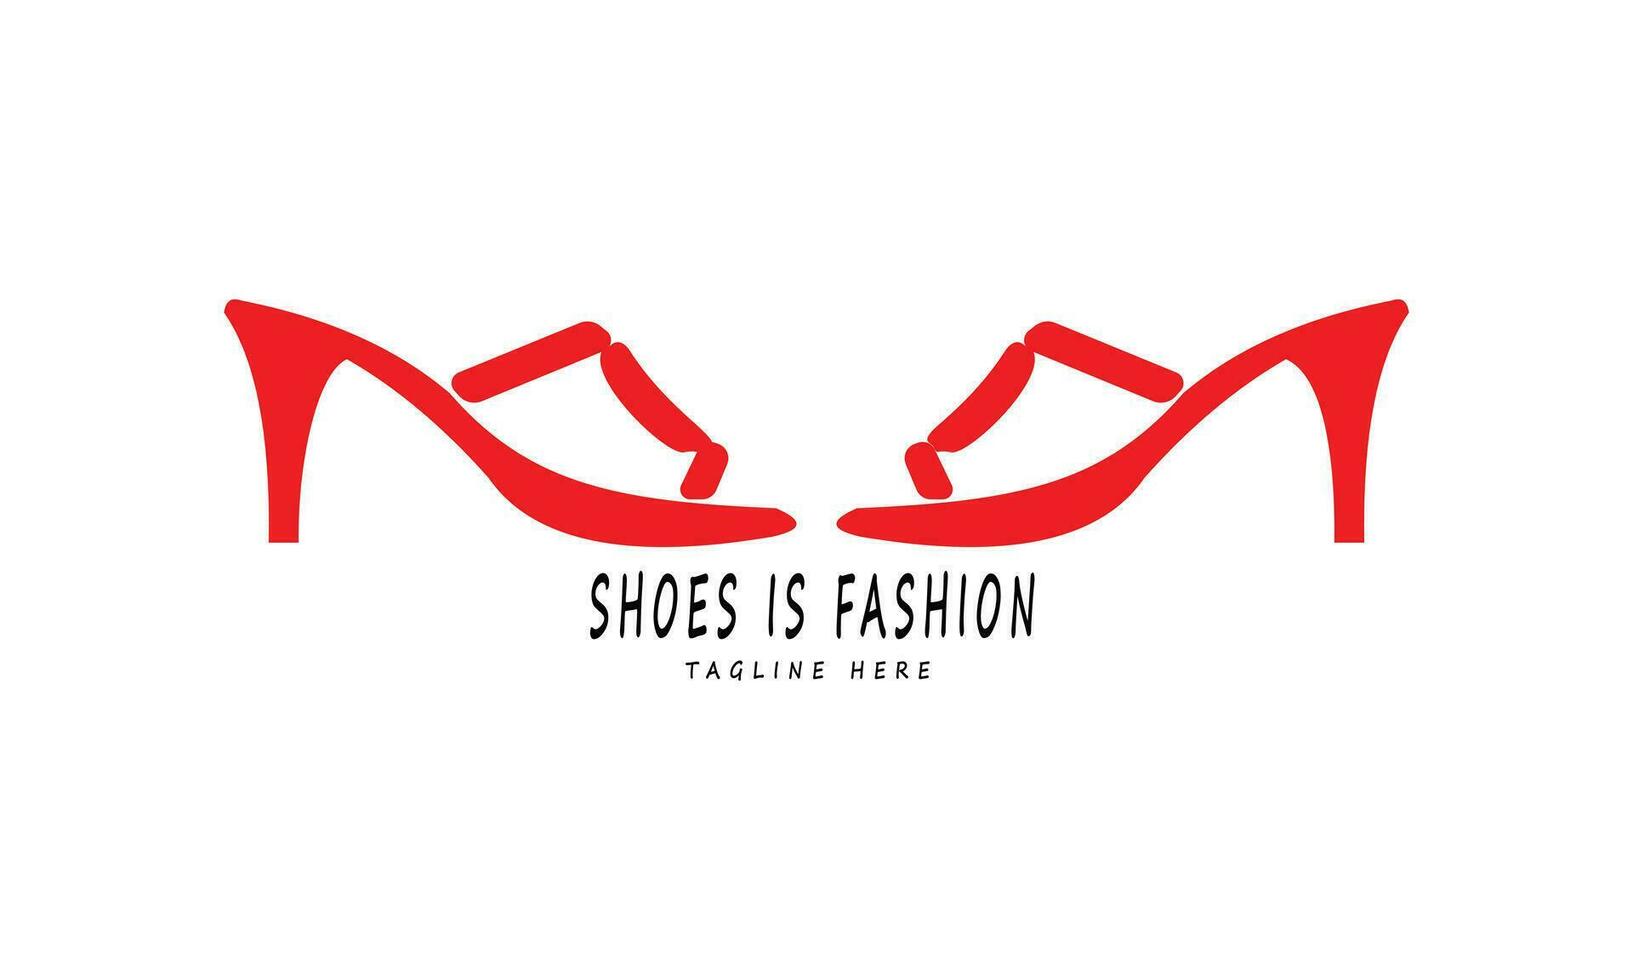 röd hög heeled kvinnors skor är en symbol av trender mode vektor